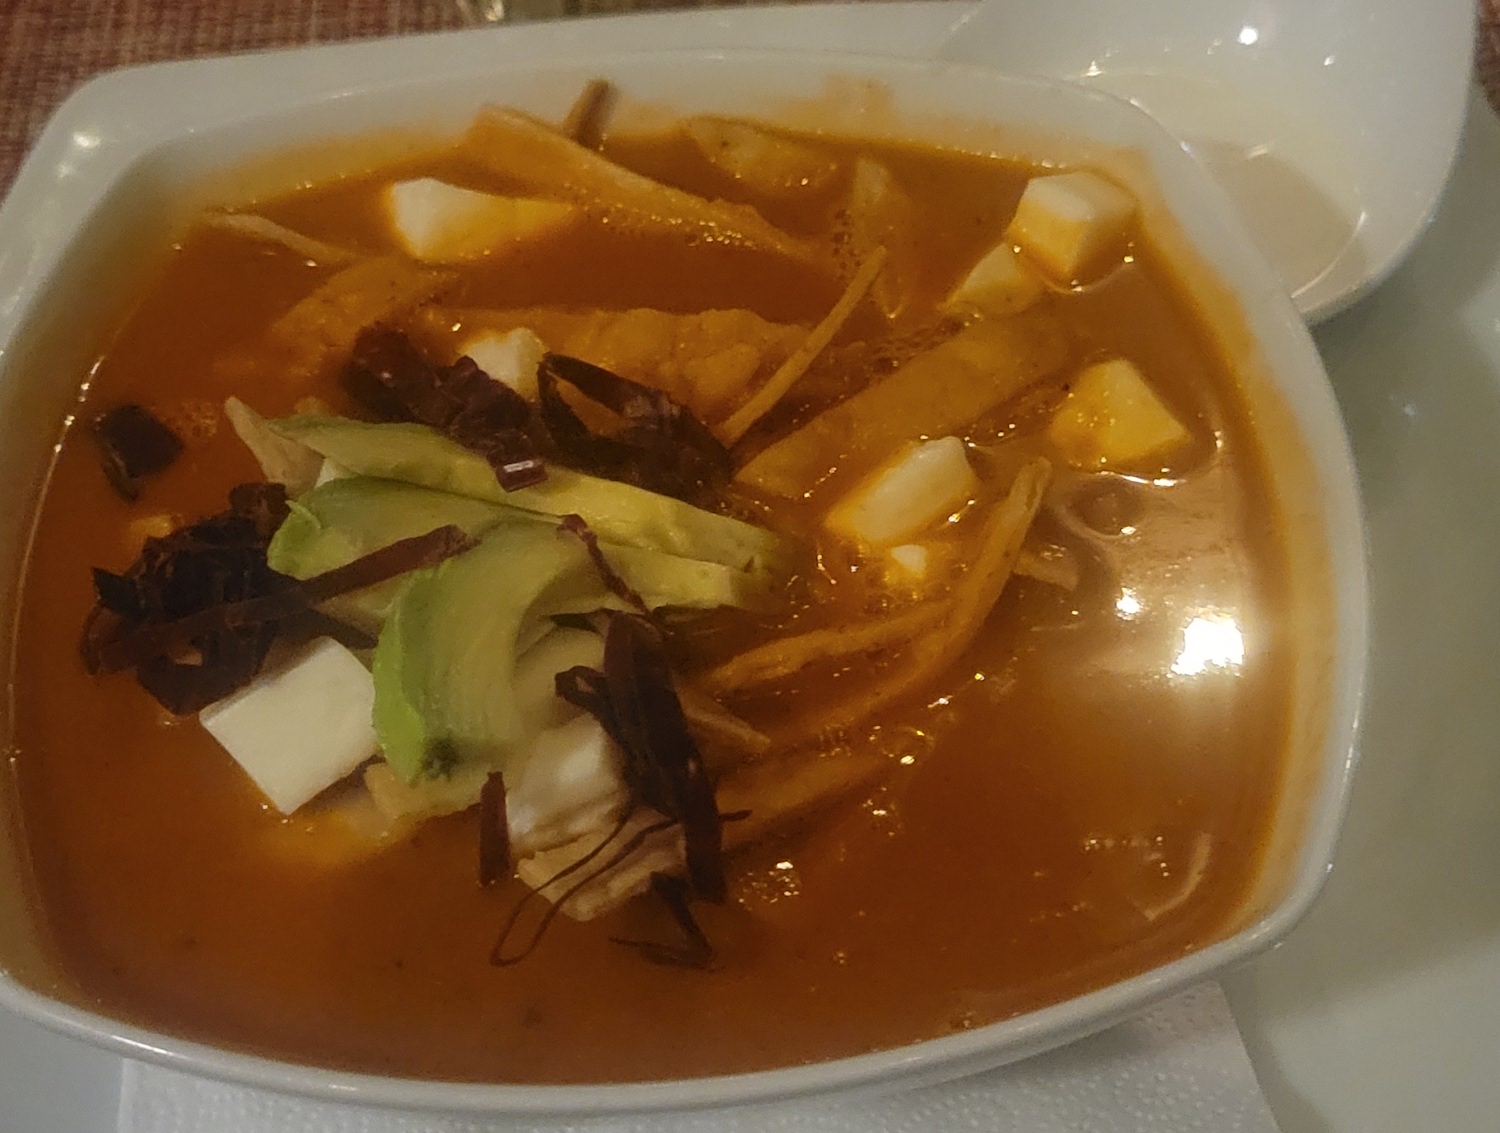 Tortilla soup in a white bowl